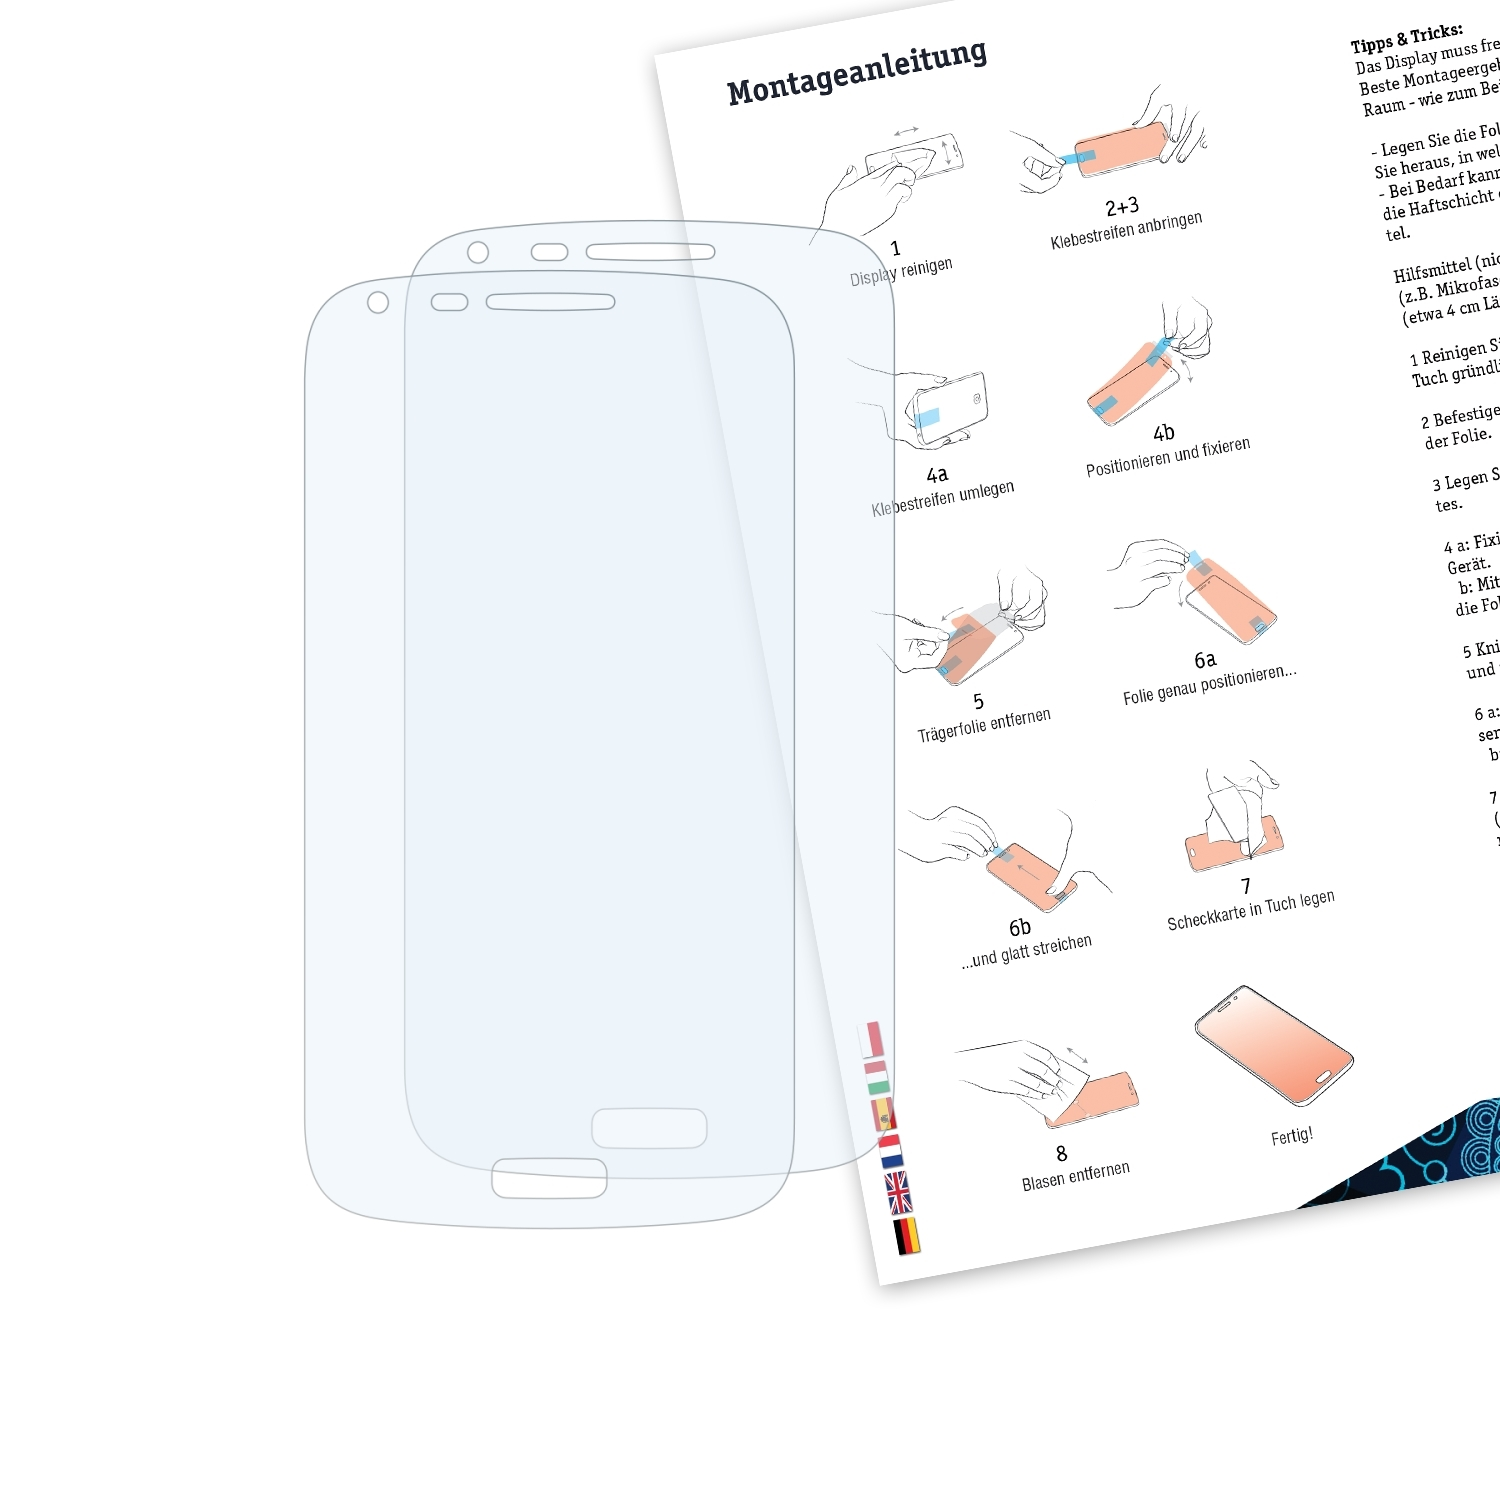 BRUNI 2x Basics-Clear Schutzfolie(für Samsung (GT-i8260)) Galaxy Core